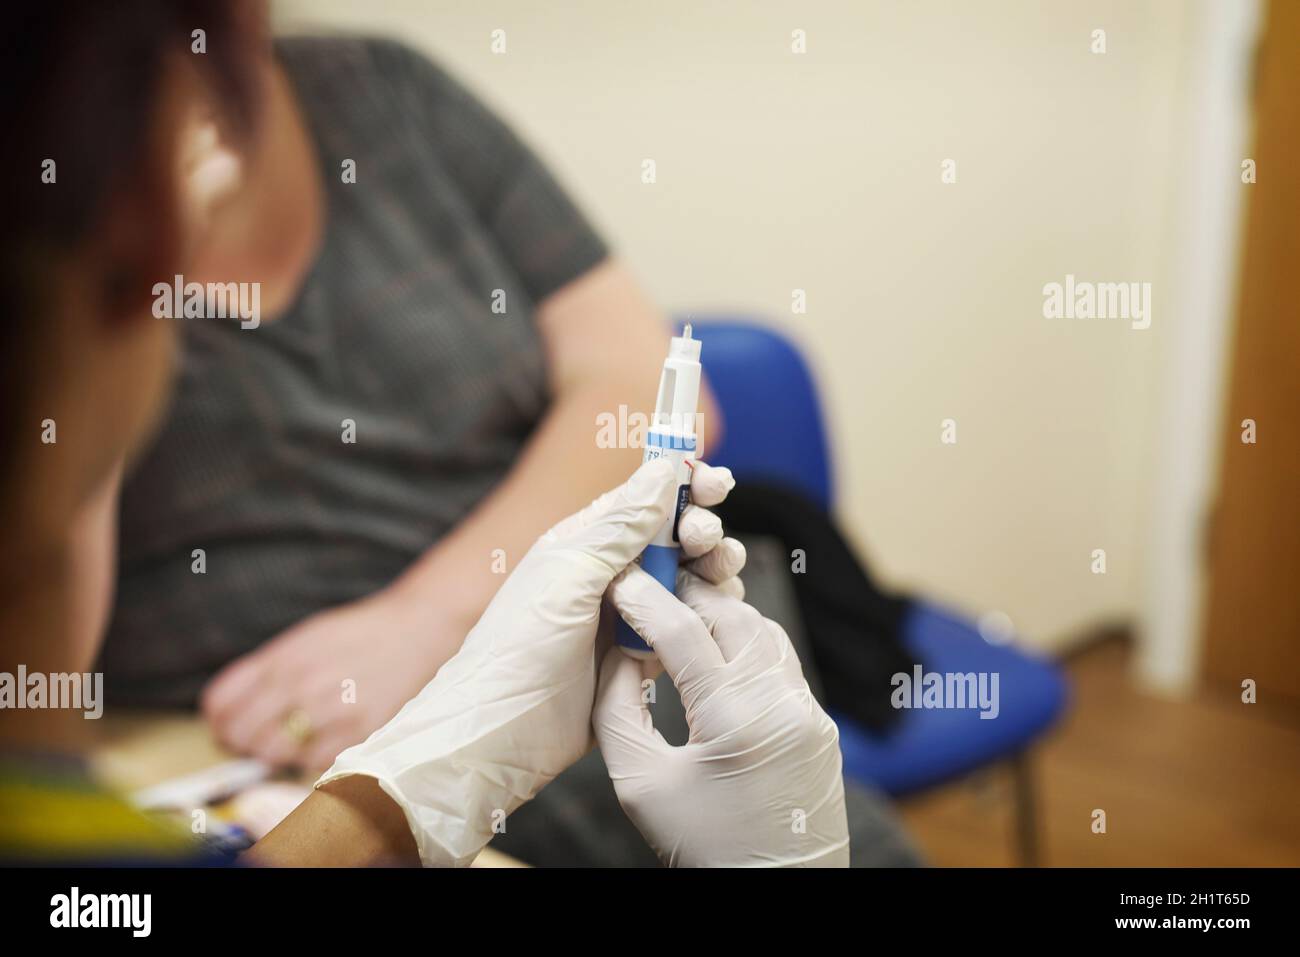 Weibliche GP-Chirurgie Krankenschwester trägt Handschuhe macht sich bereit, eine Injektion an eine weibliche Patientin in einer NHS-Chirurgie zu verabreichen Stockfoto